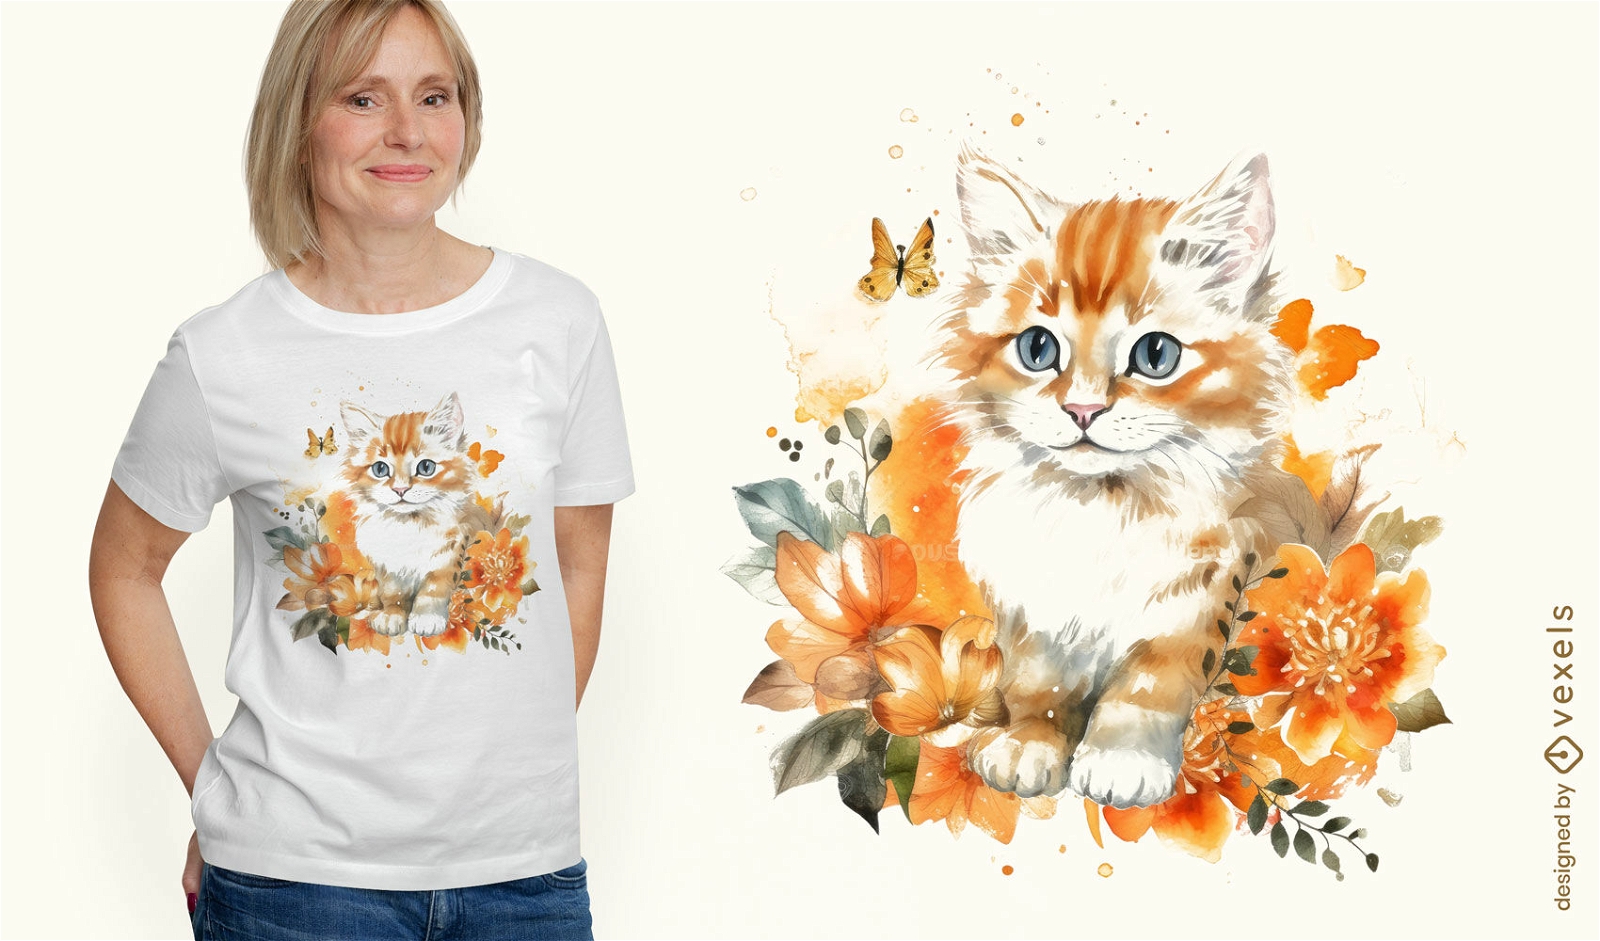 Watercolor kitten t-shirt design